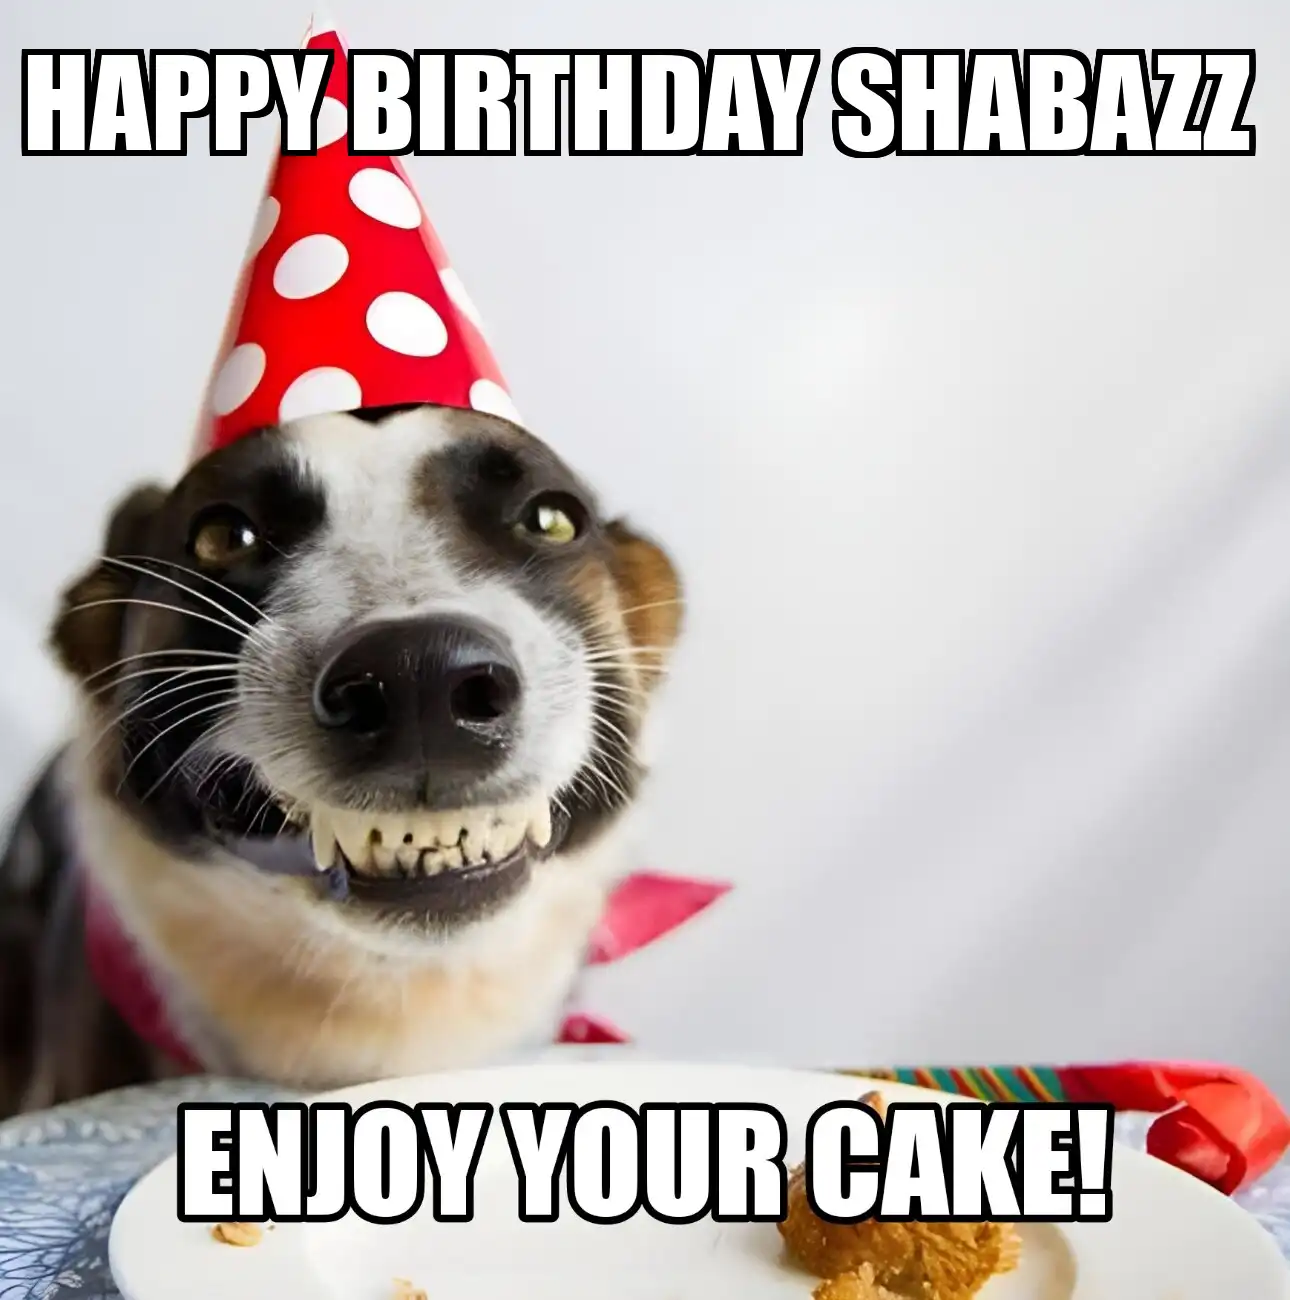 Happy Birthday Shabazz Enjoy Your Cake Dog Meme